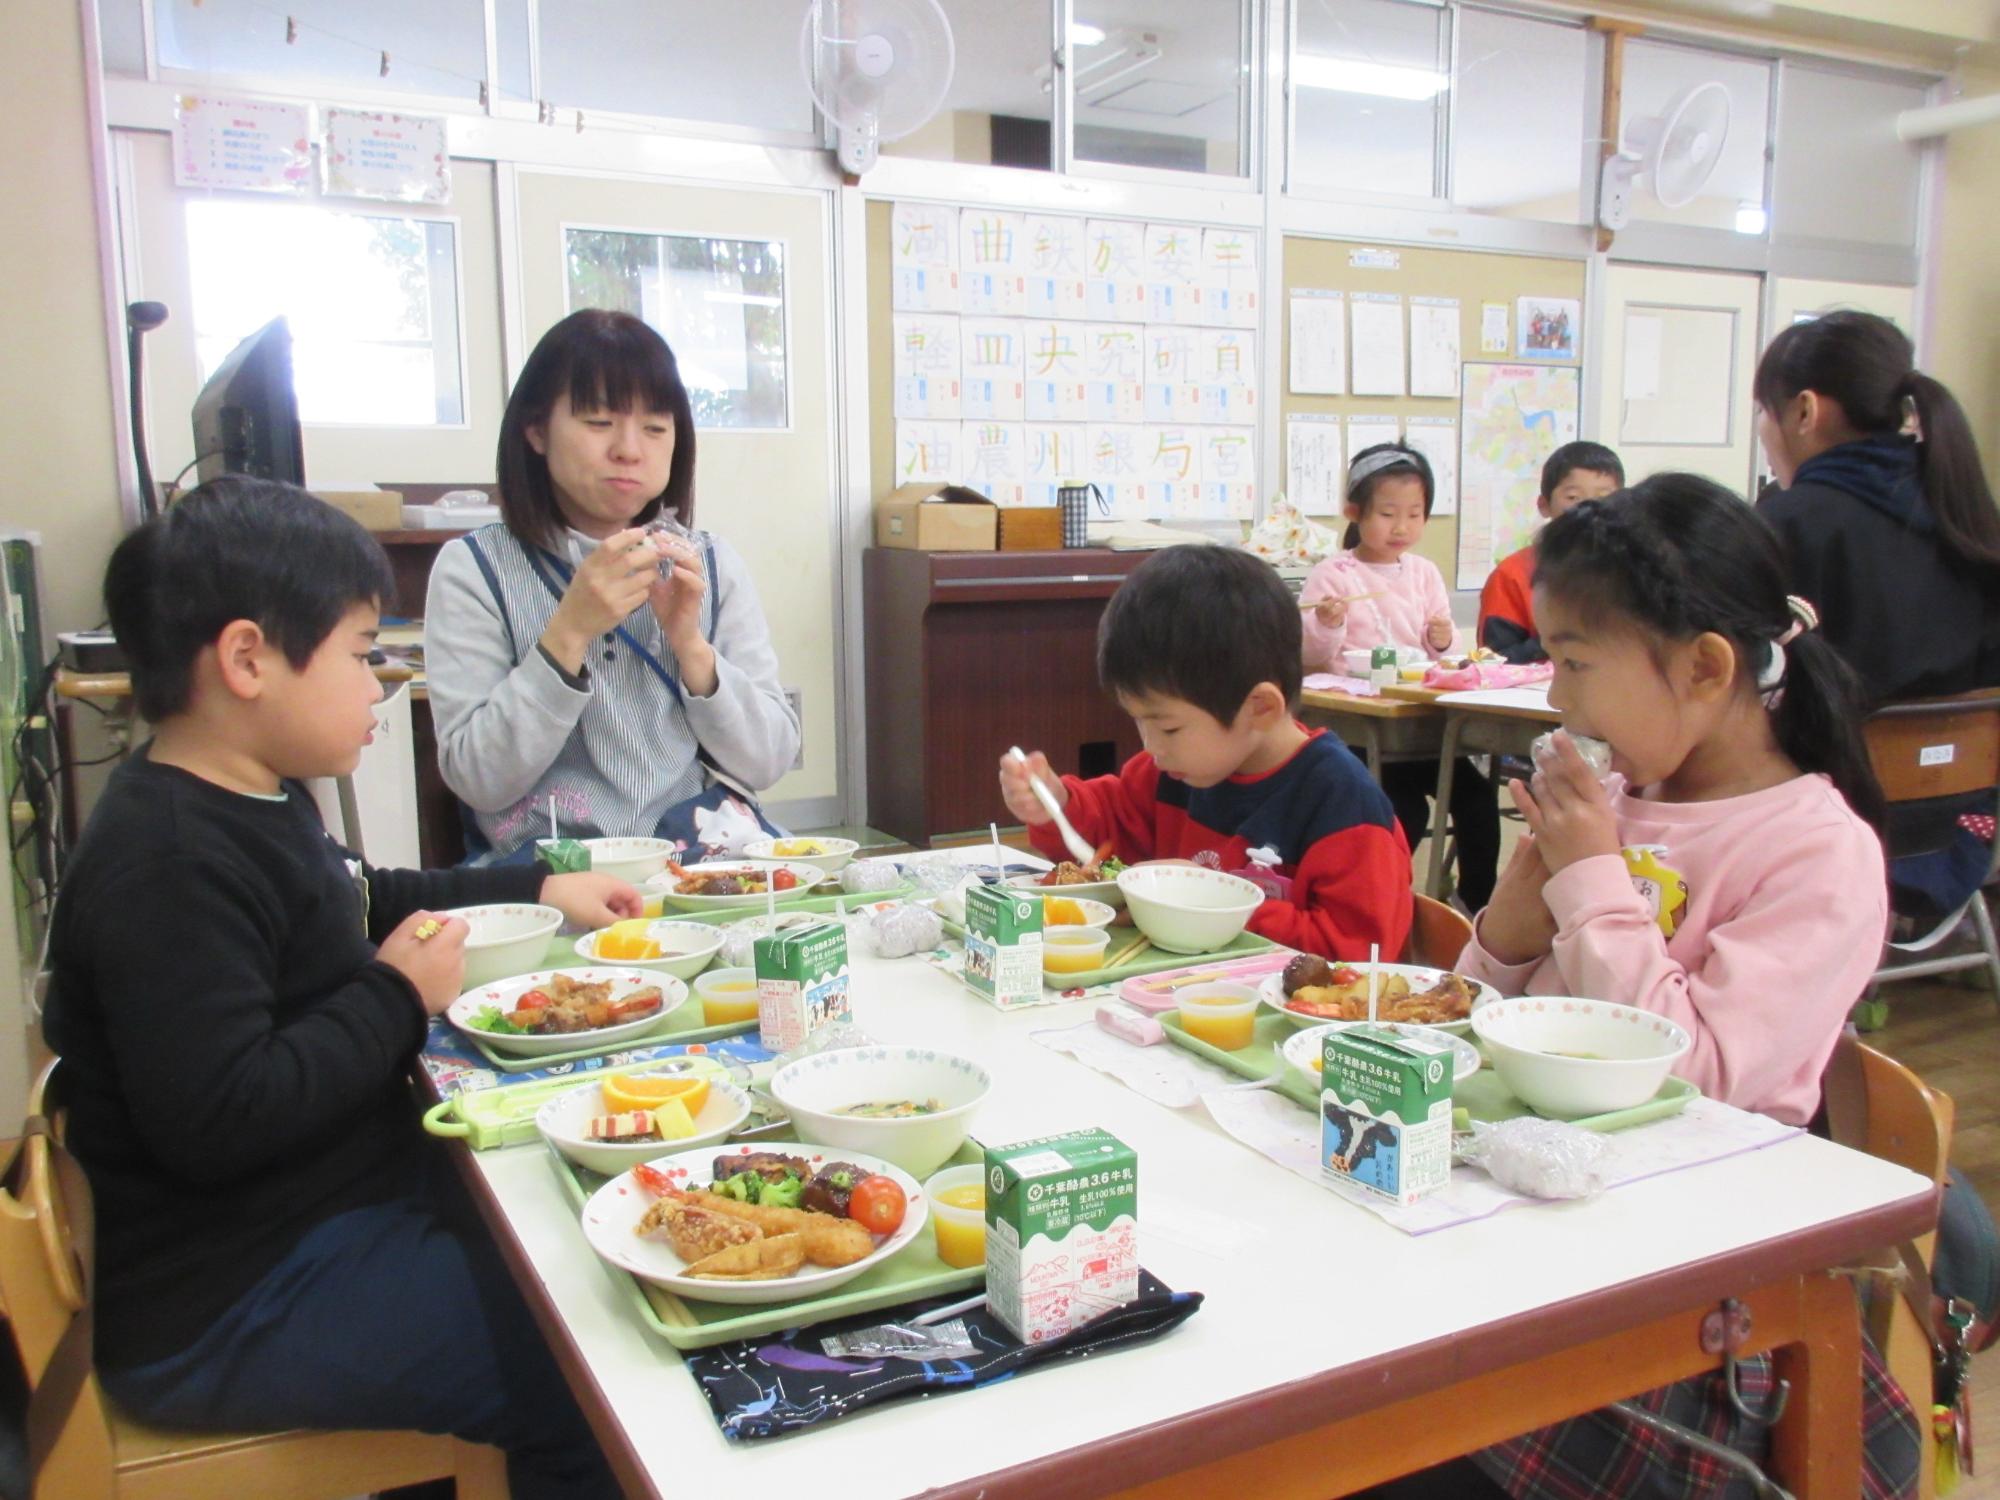 園児3名と女性が、トレイに並べられたお皿に盛りつけられた給食を食べている写真